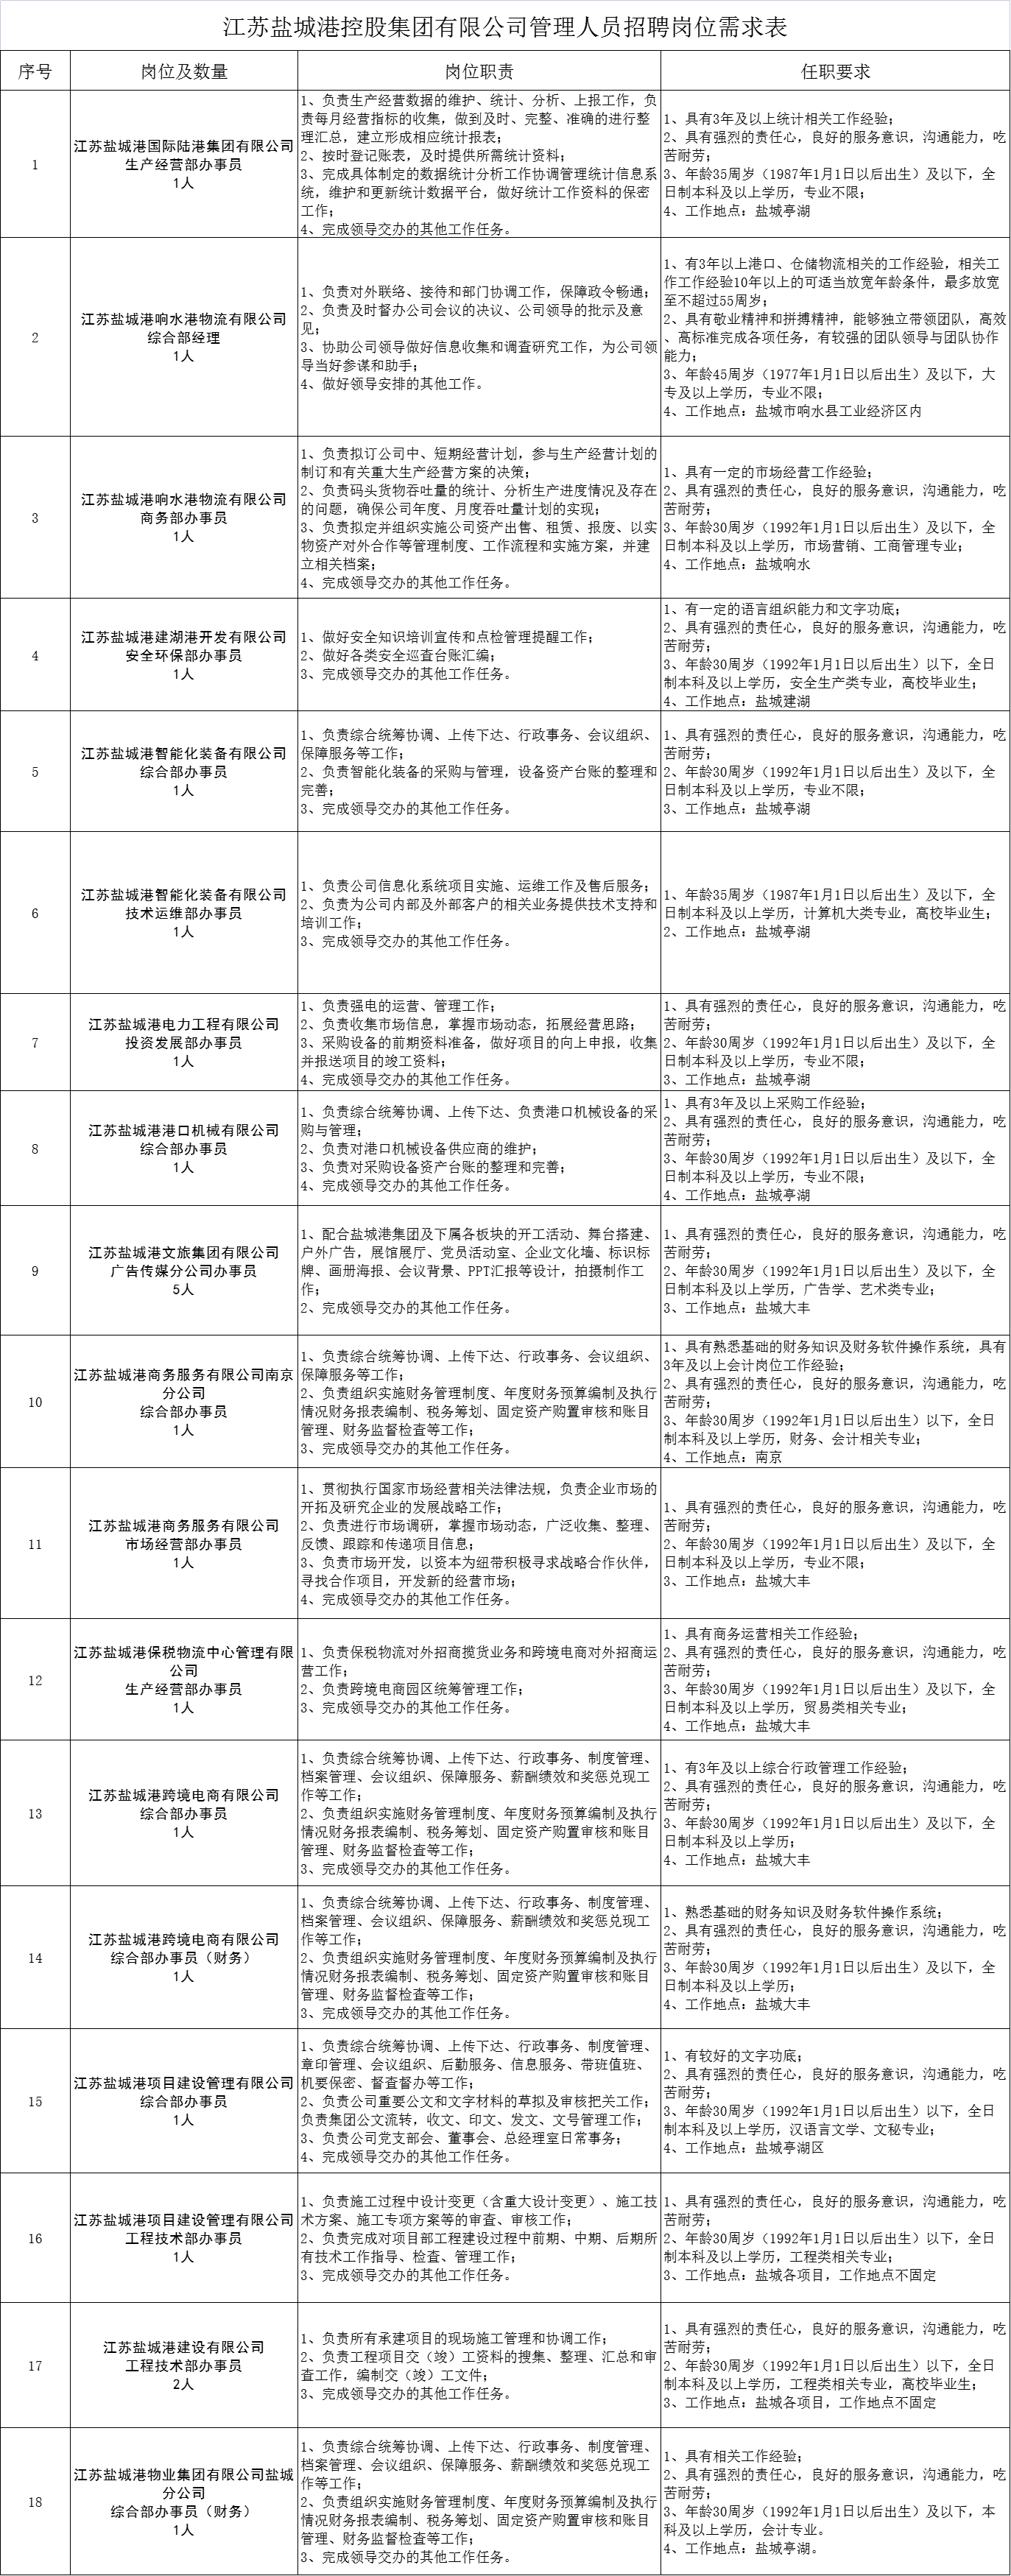 江苏盐城港控股集团有限公司招聘招聘管理人员23名